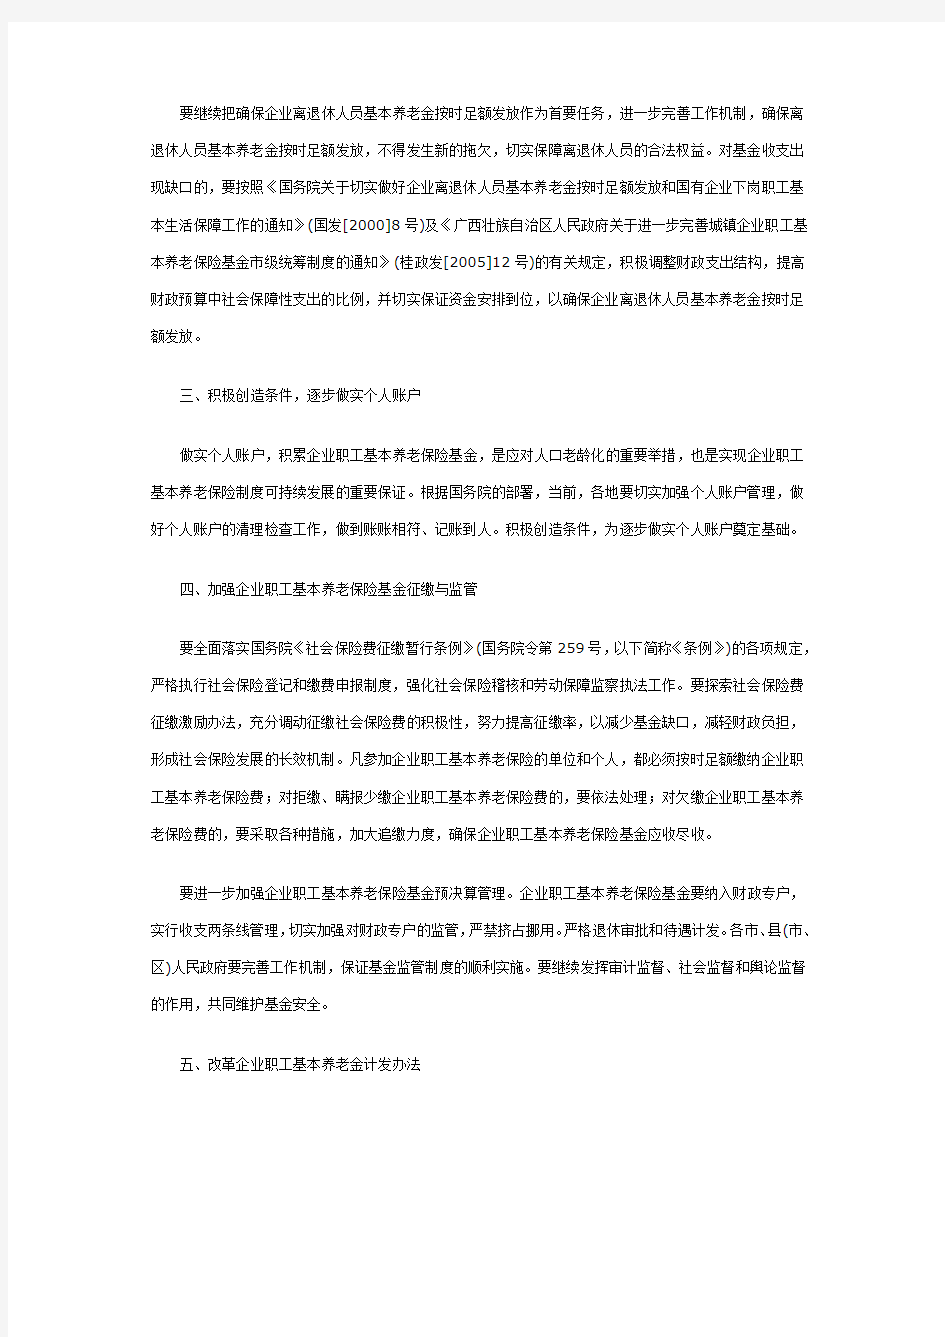 《广西壮族自治区人民政府关于完善企业职工基本养老保险制度的决定》